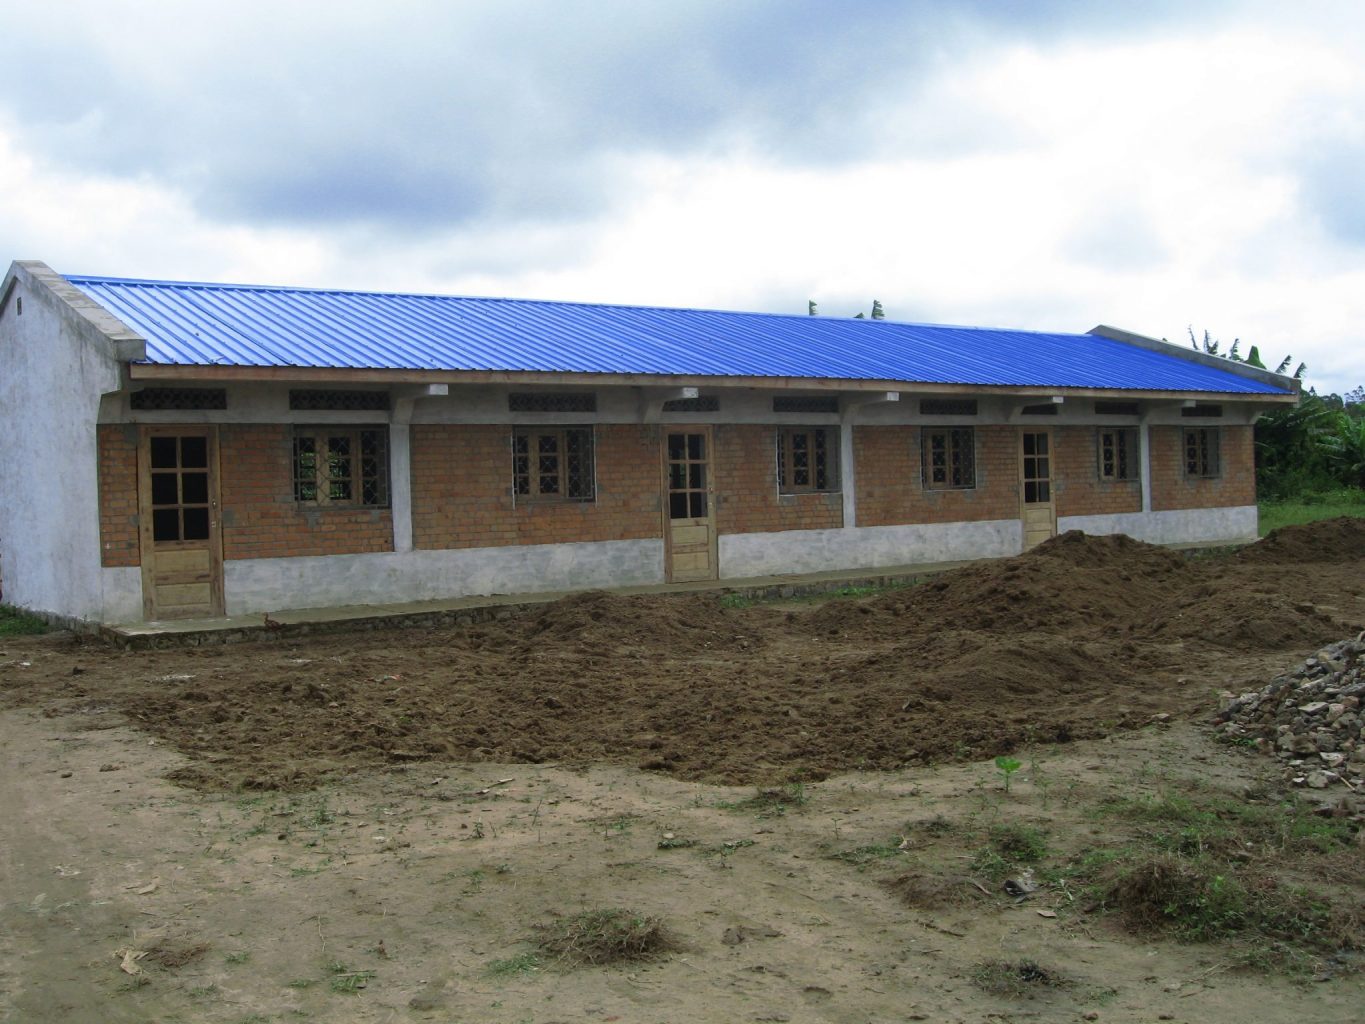 Sahafitana School as it stands